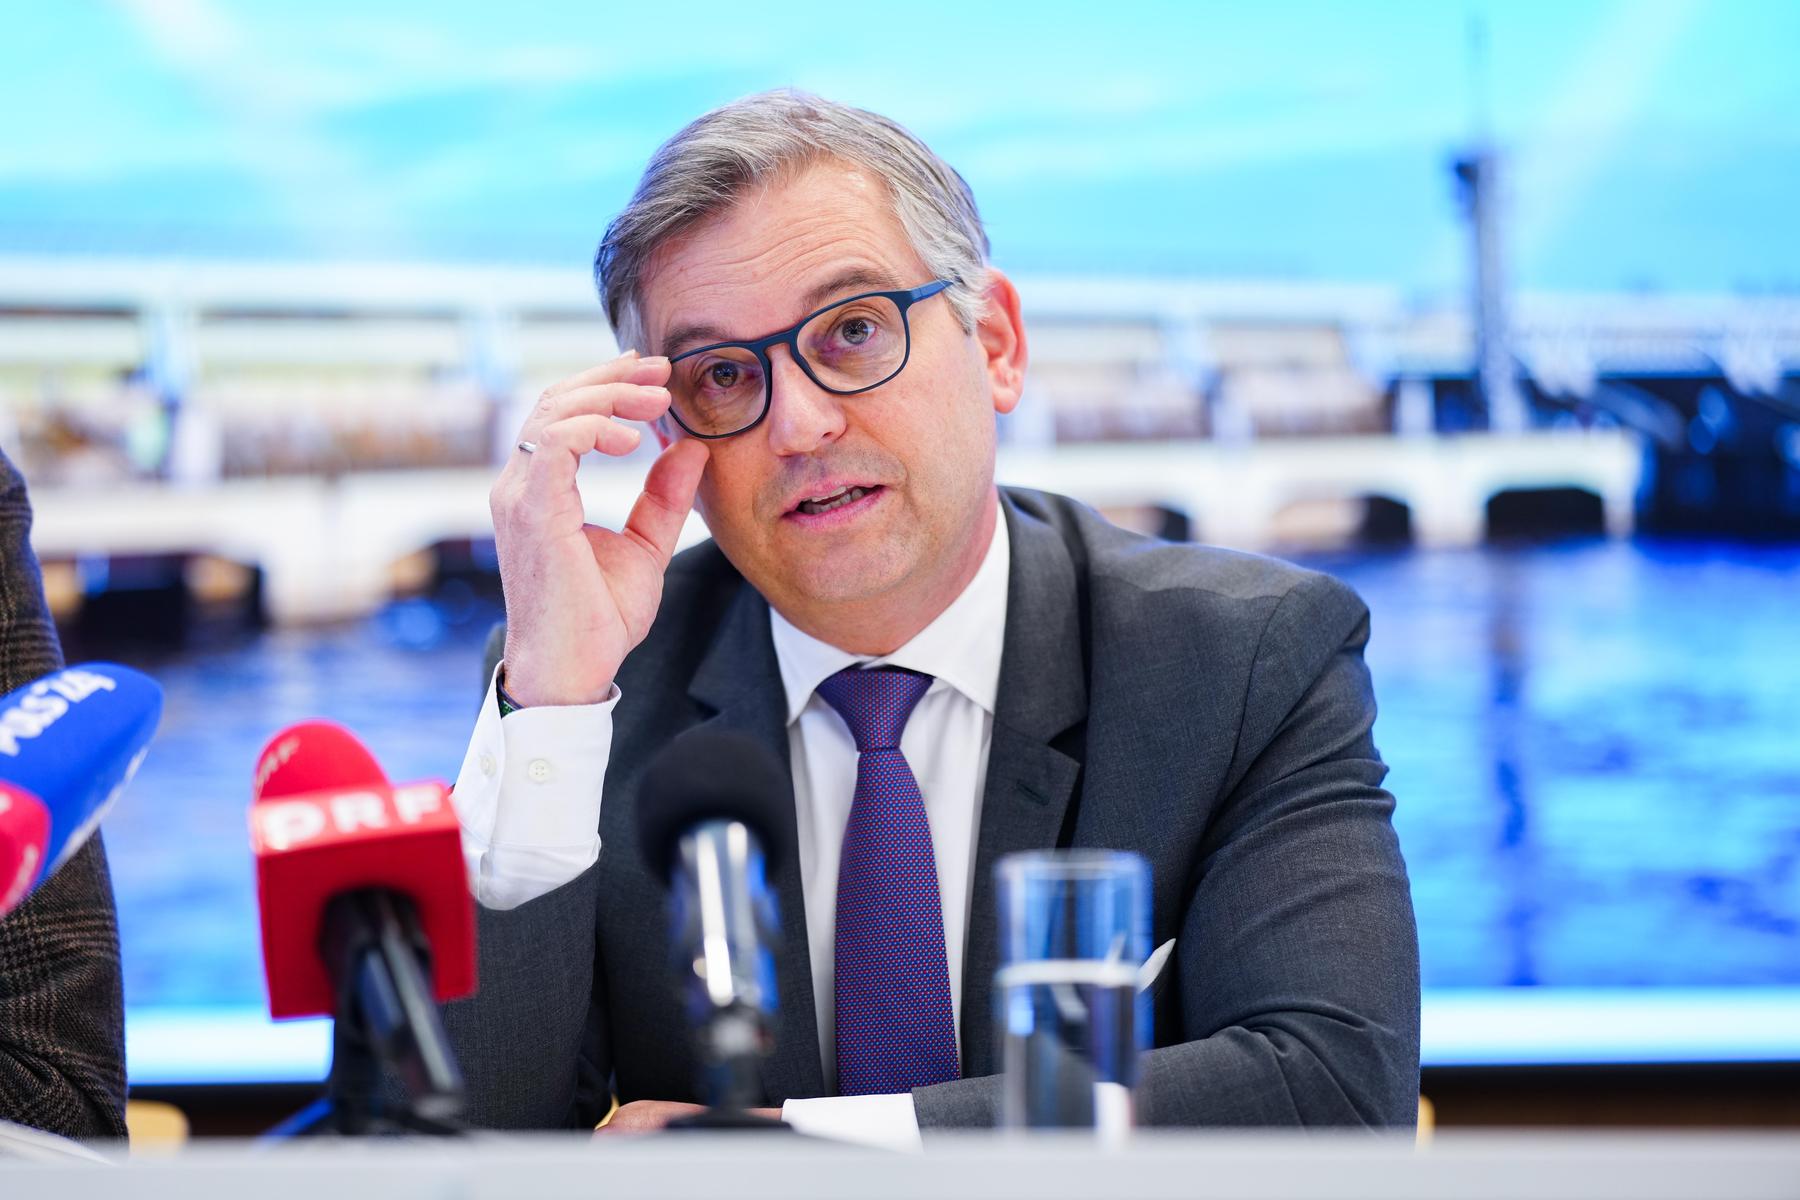 wer wird neuer eu-kommissar?: im gerangel um österreichs eu-kommissar taucht ein neuer name auf